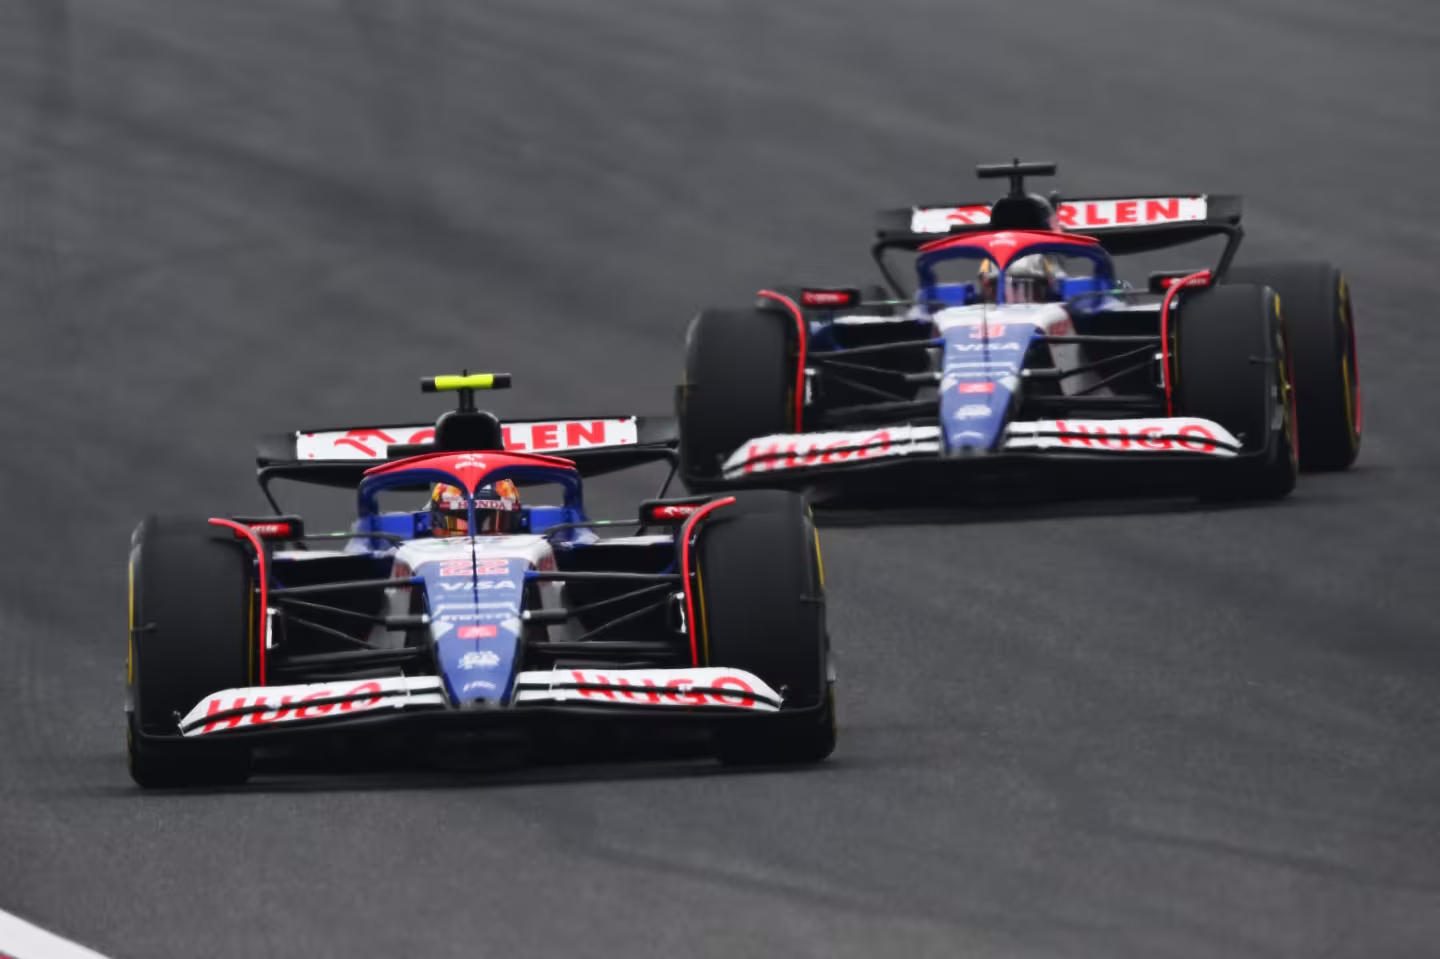 Tsunoda devant Ricciardo... Mais seulement au jeu des arrêts au stand